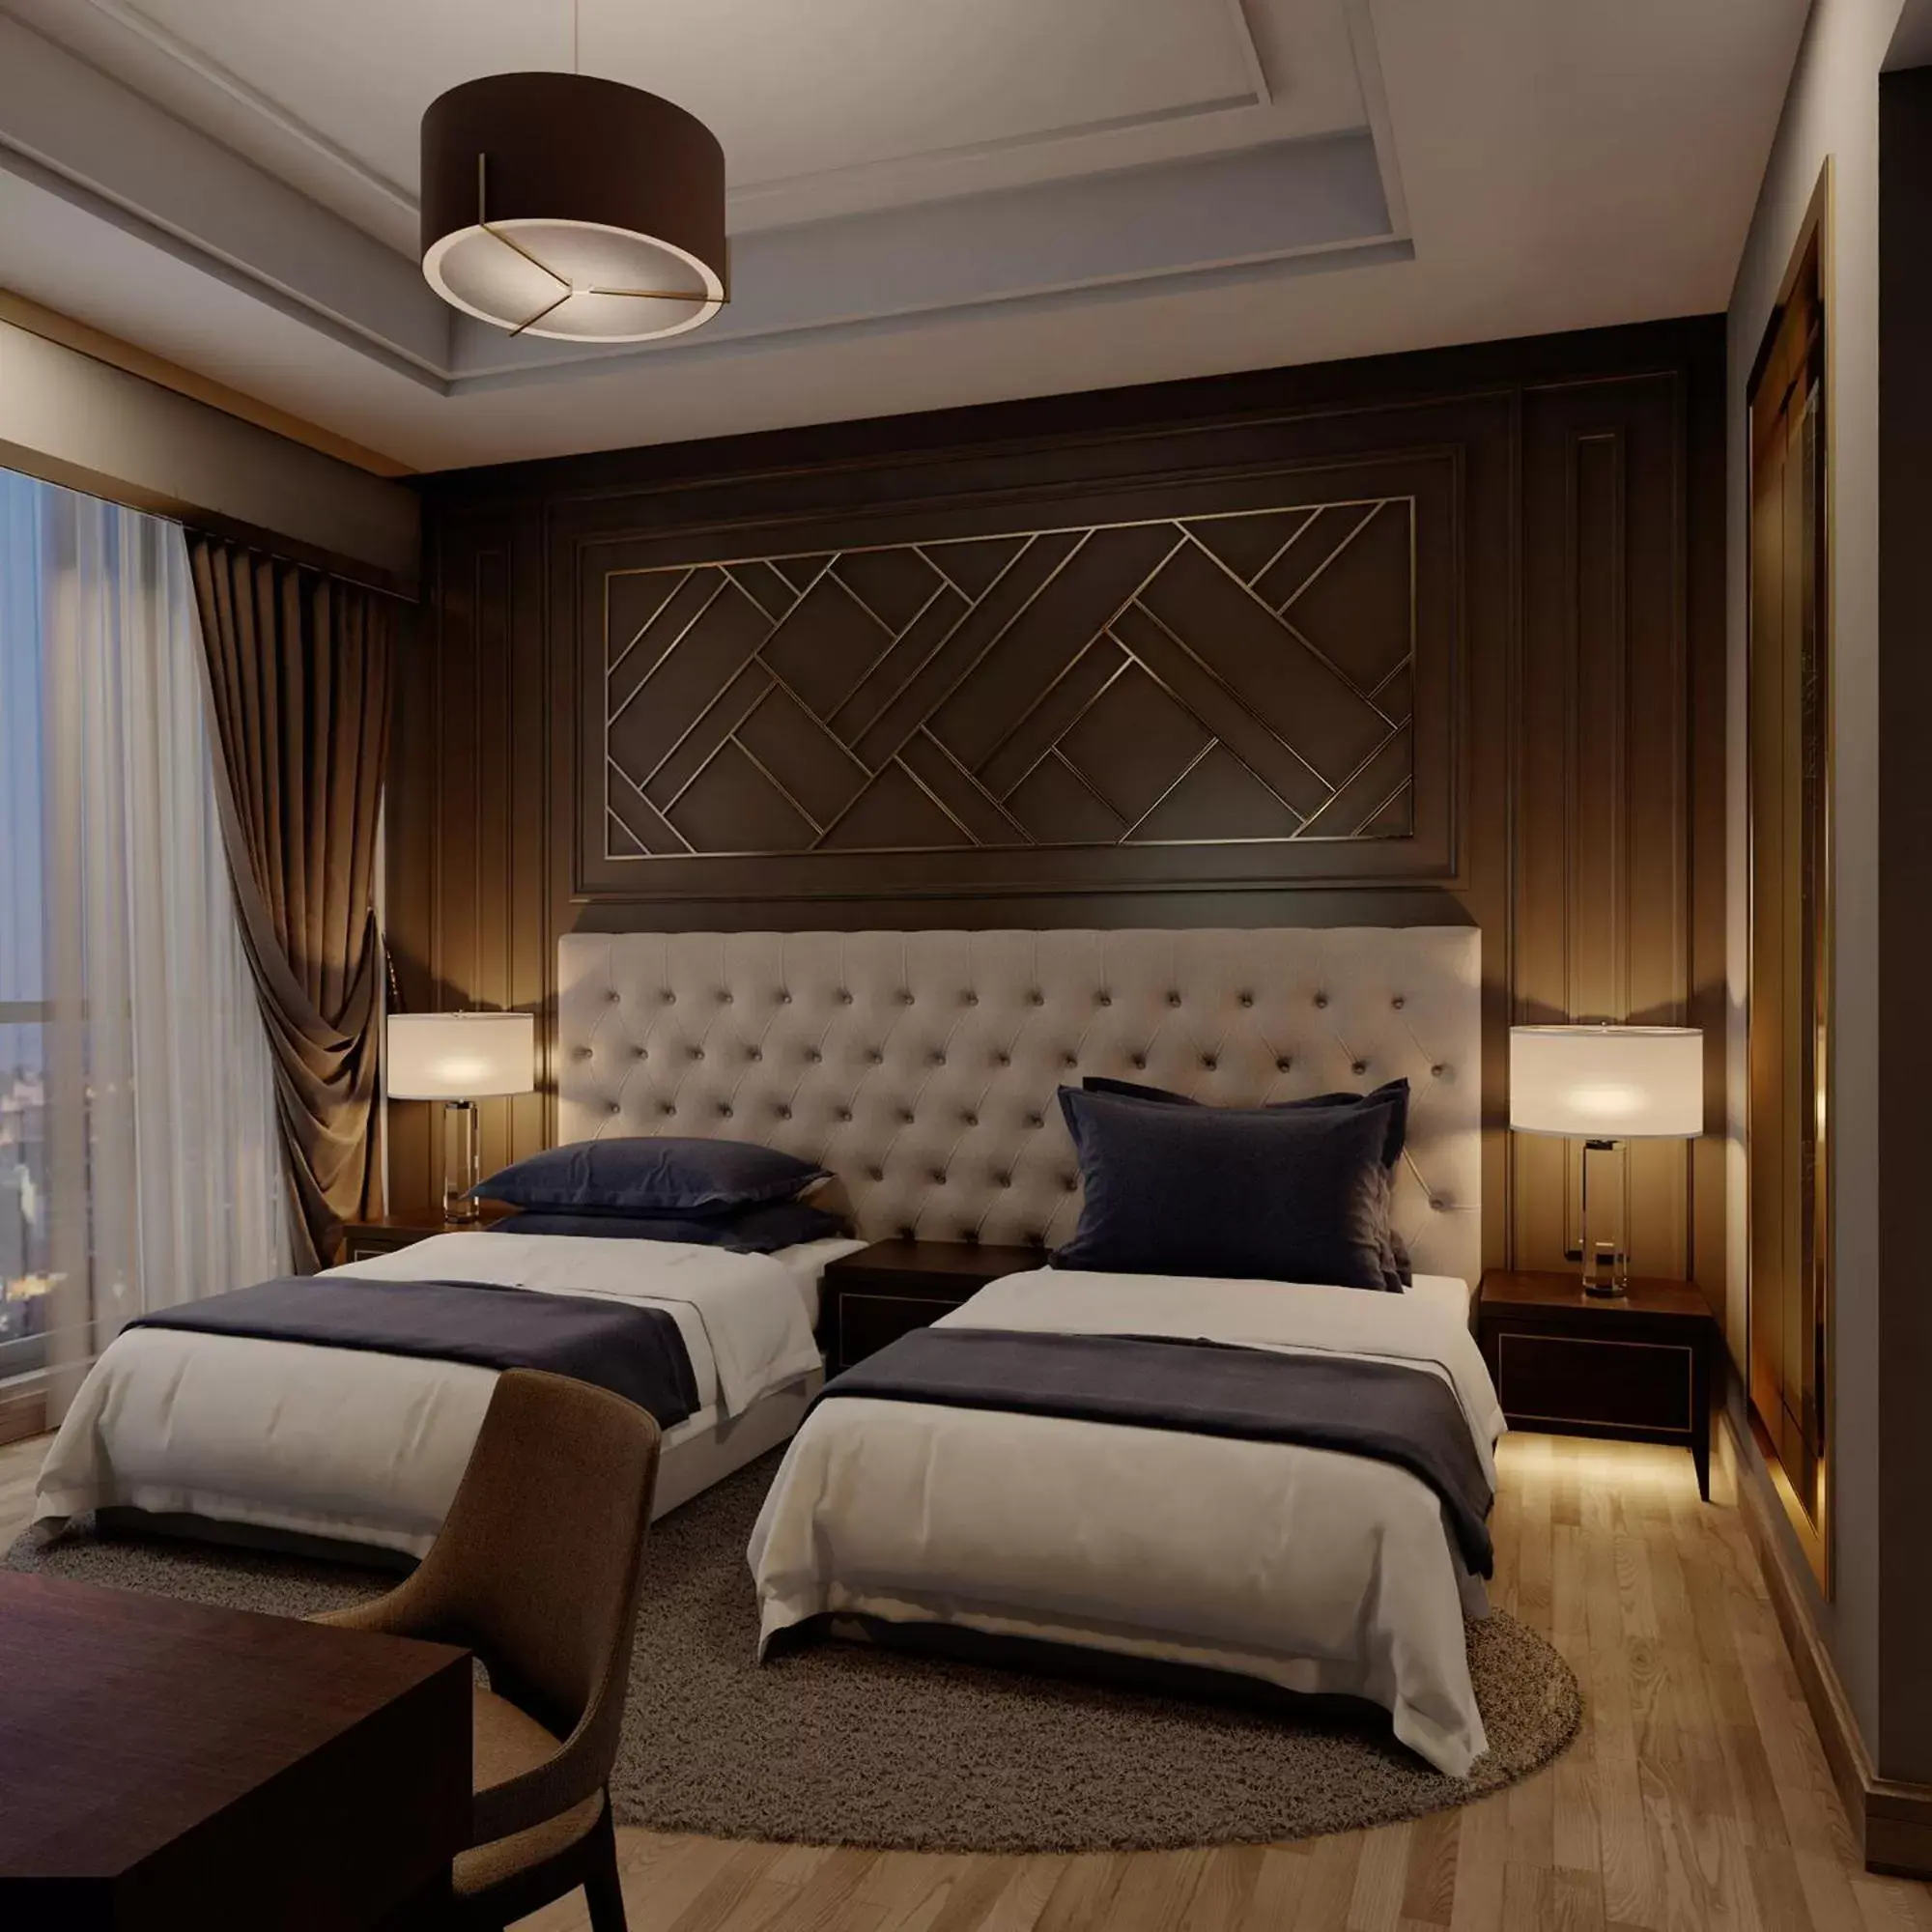 Bed in The Granite Luxury Hotel Penang